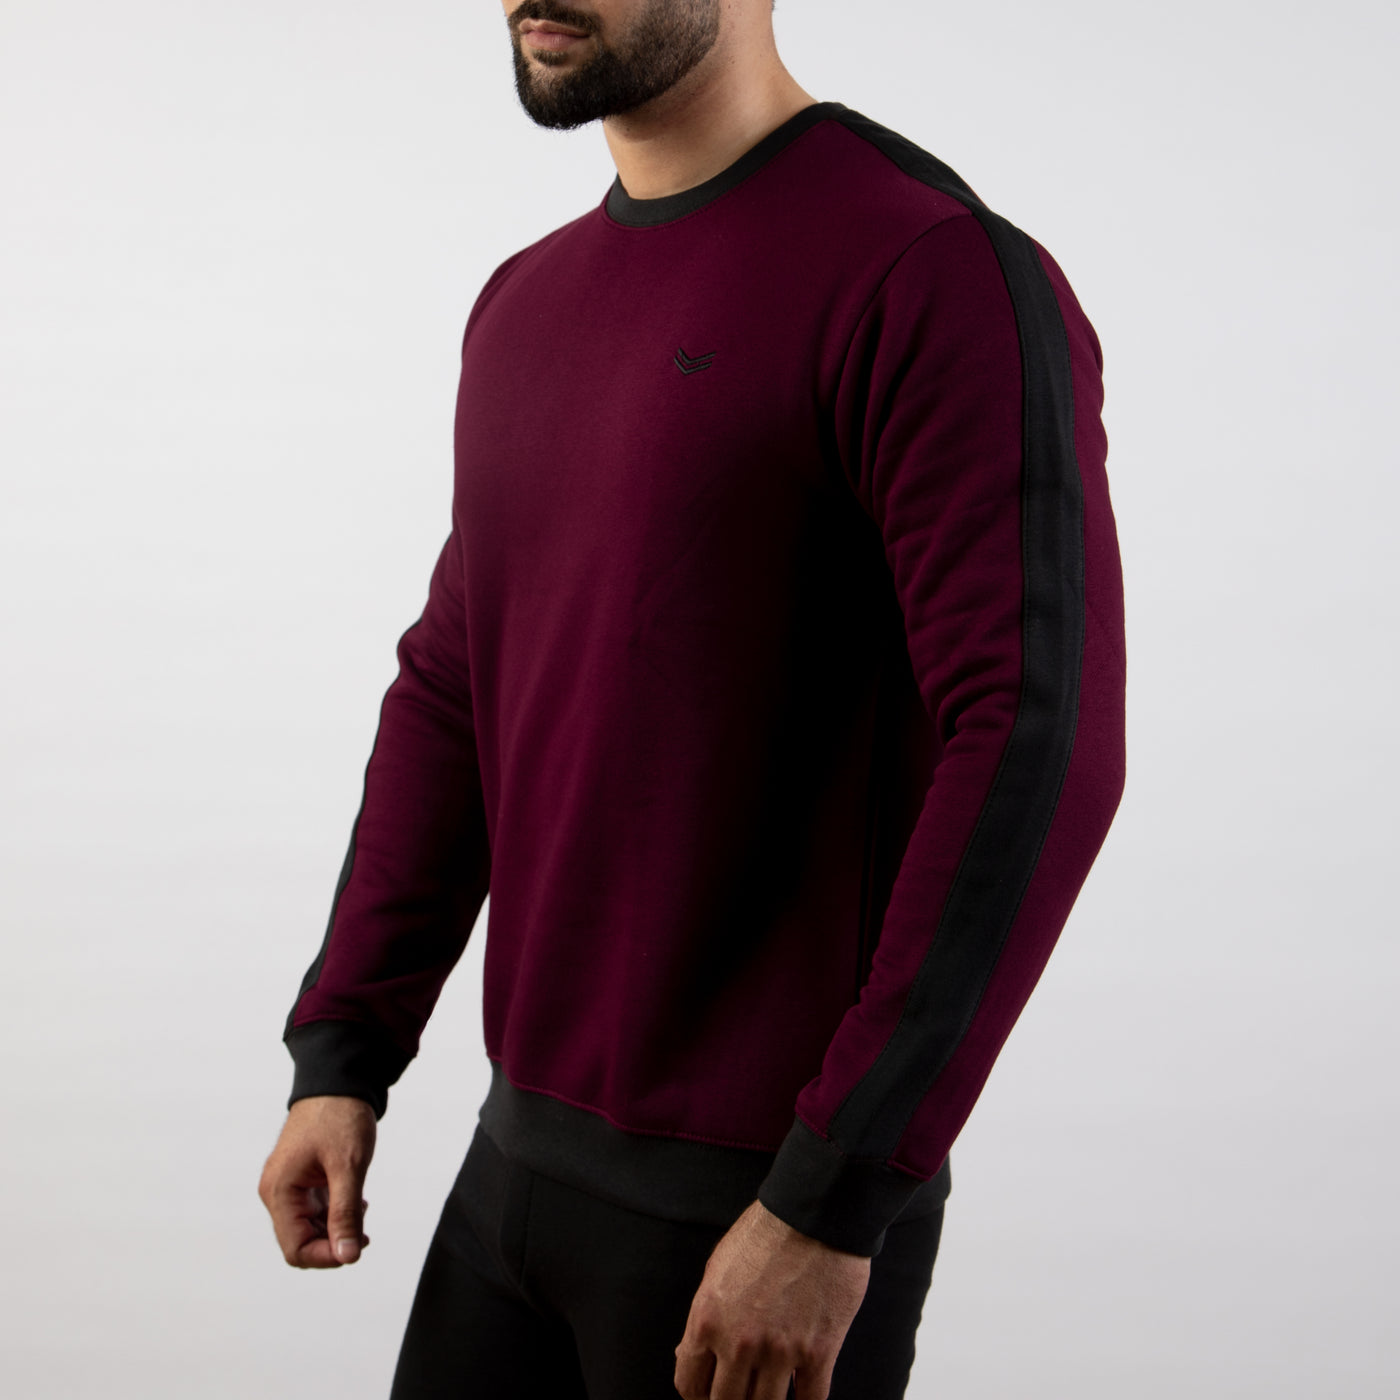 Wine Fleece Sweatshirt With Black Panels